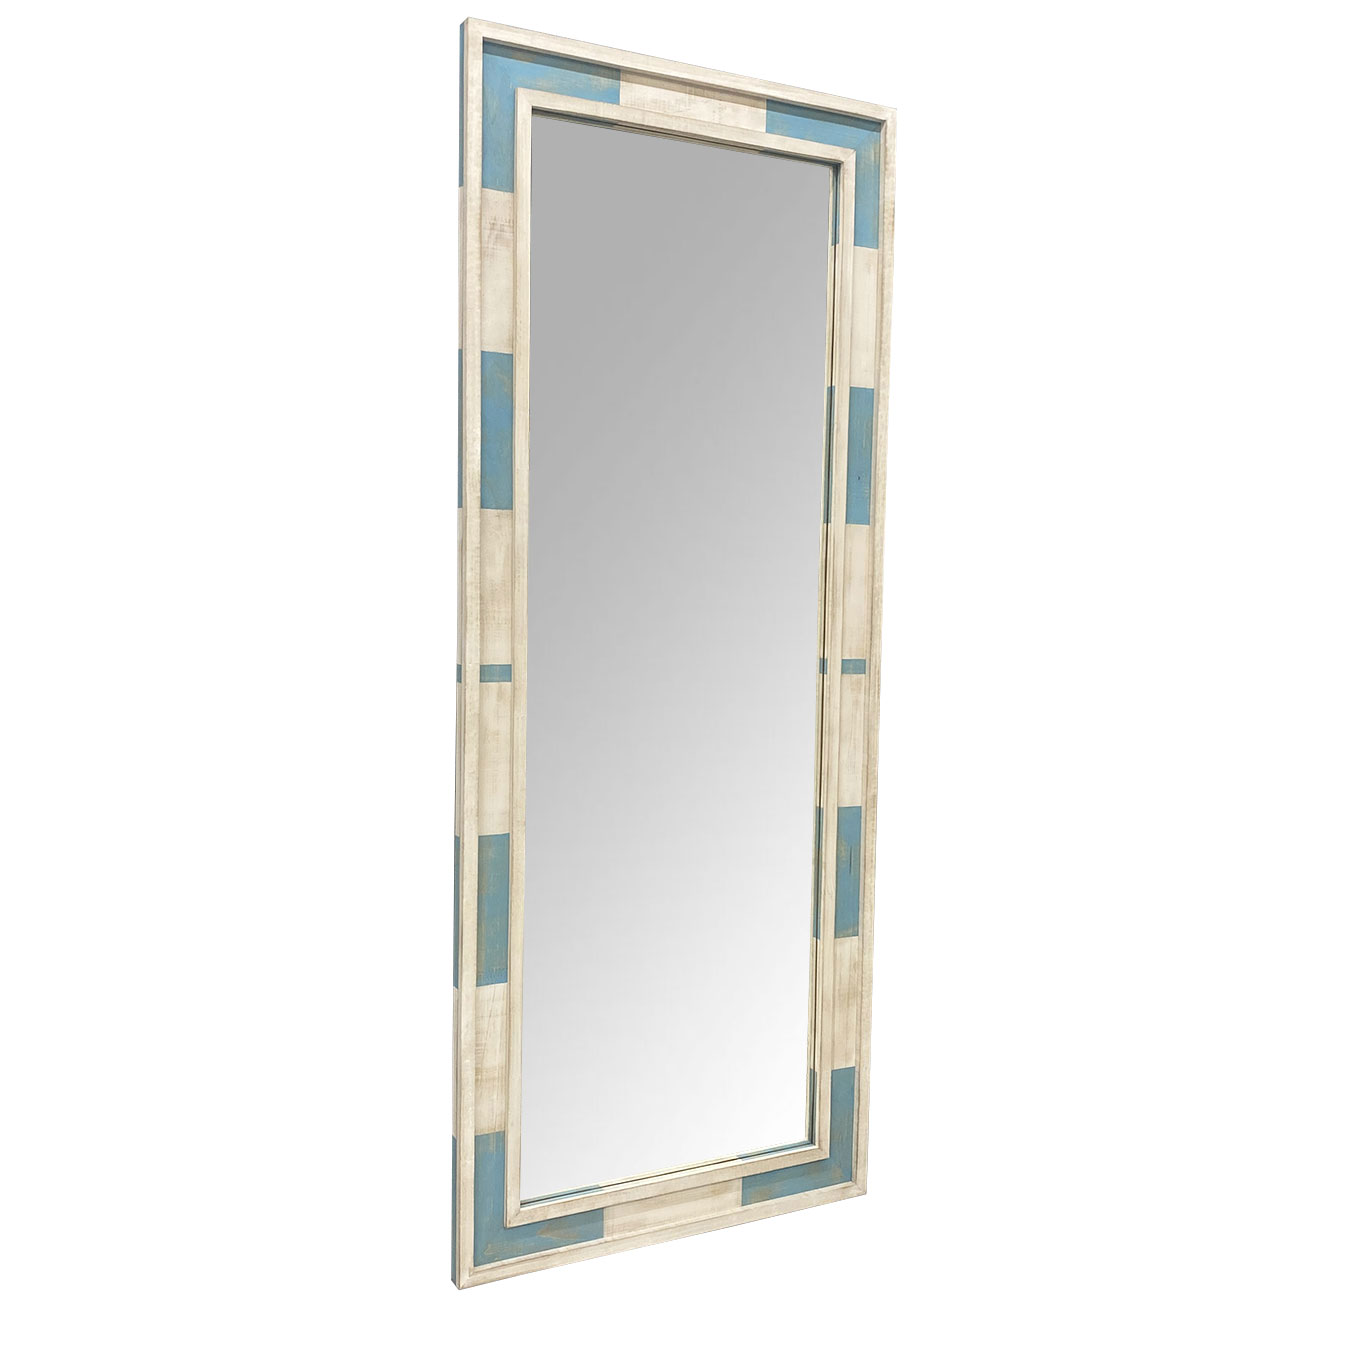  Moldura R�stica Decorativa em Madeira Azul e Branco Patinado para Espelhos - ESP.003 